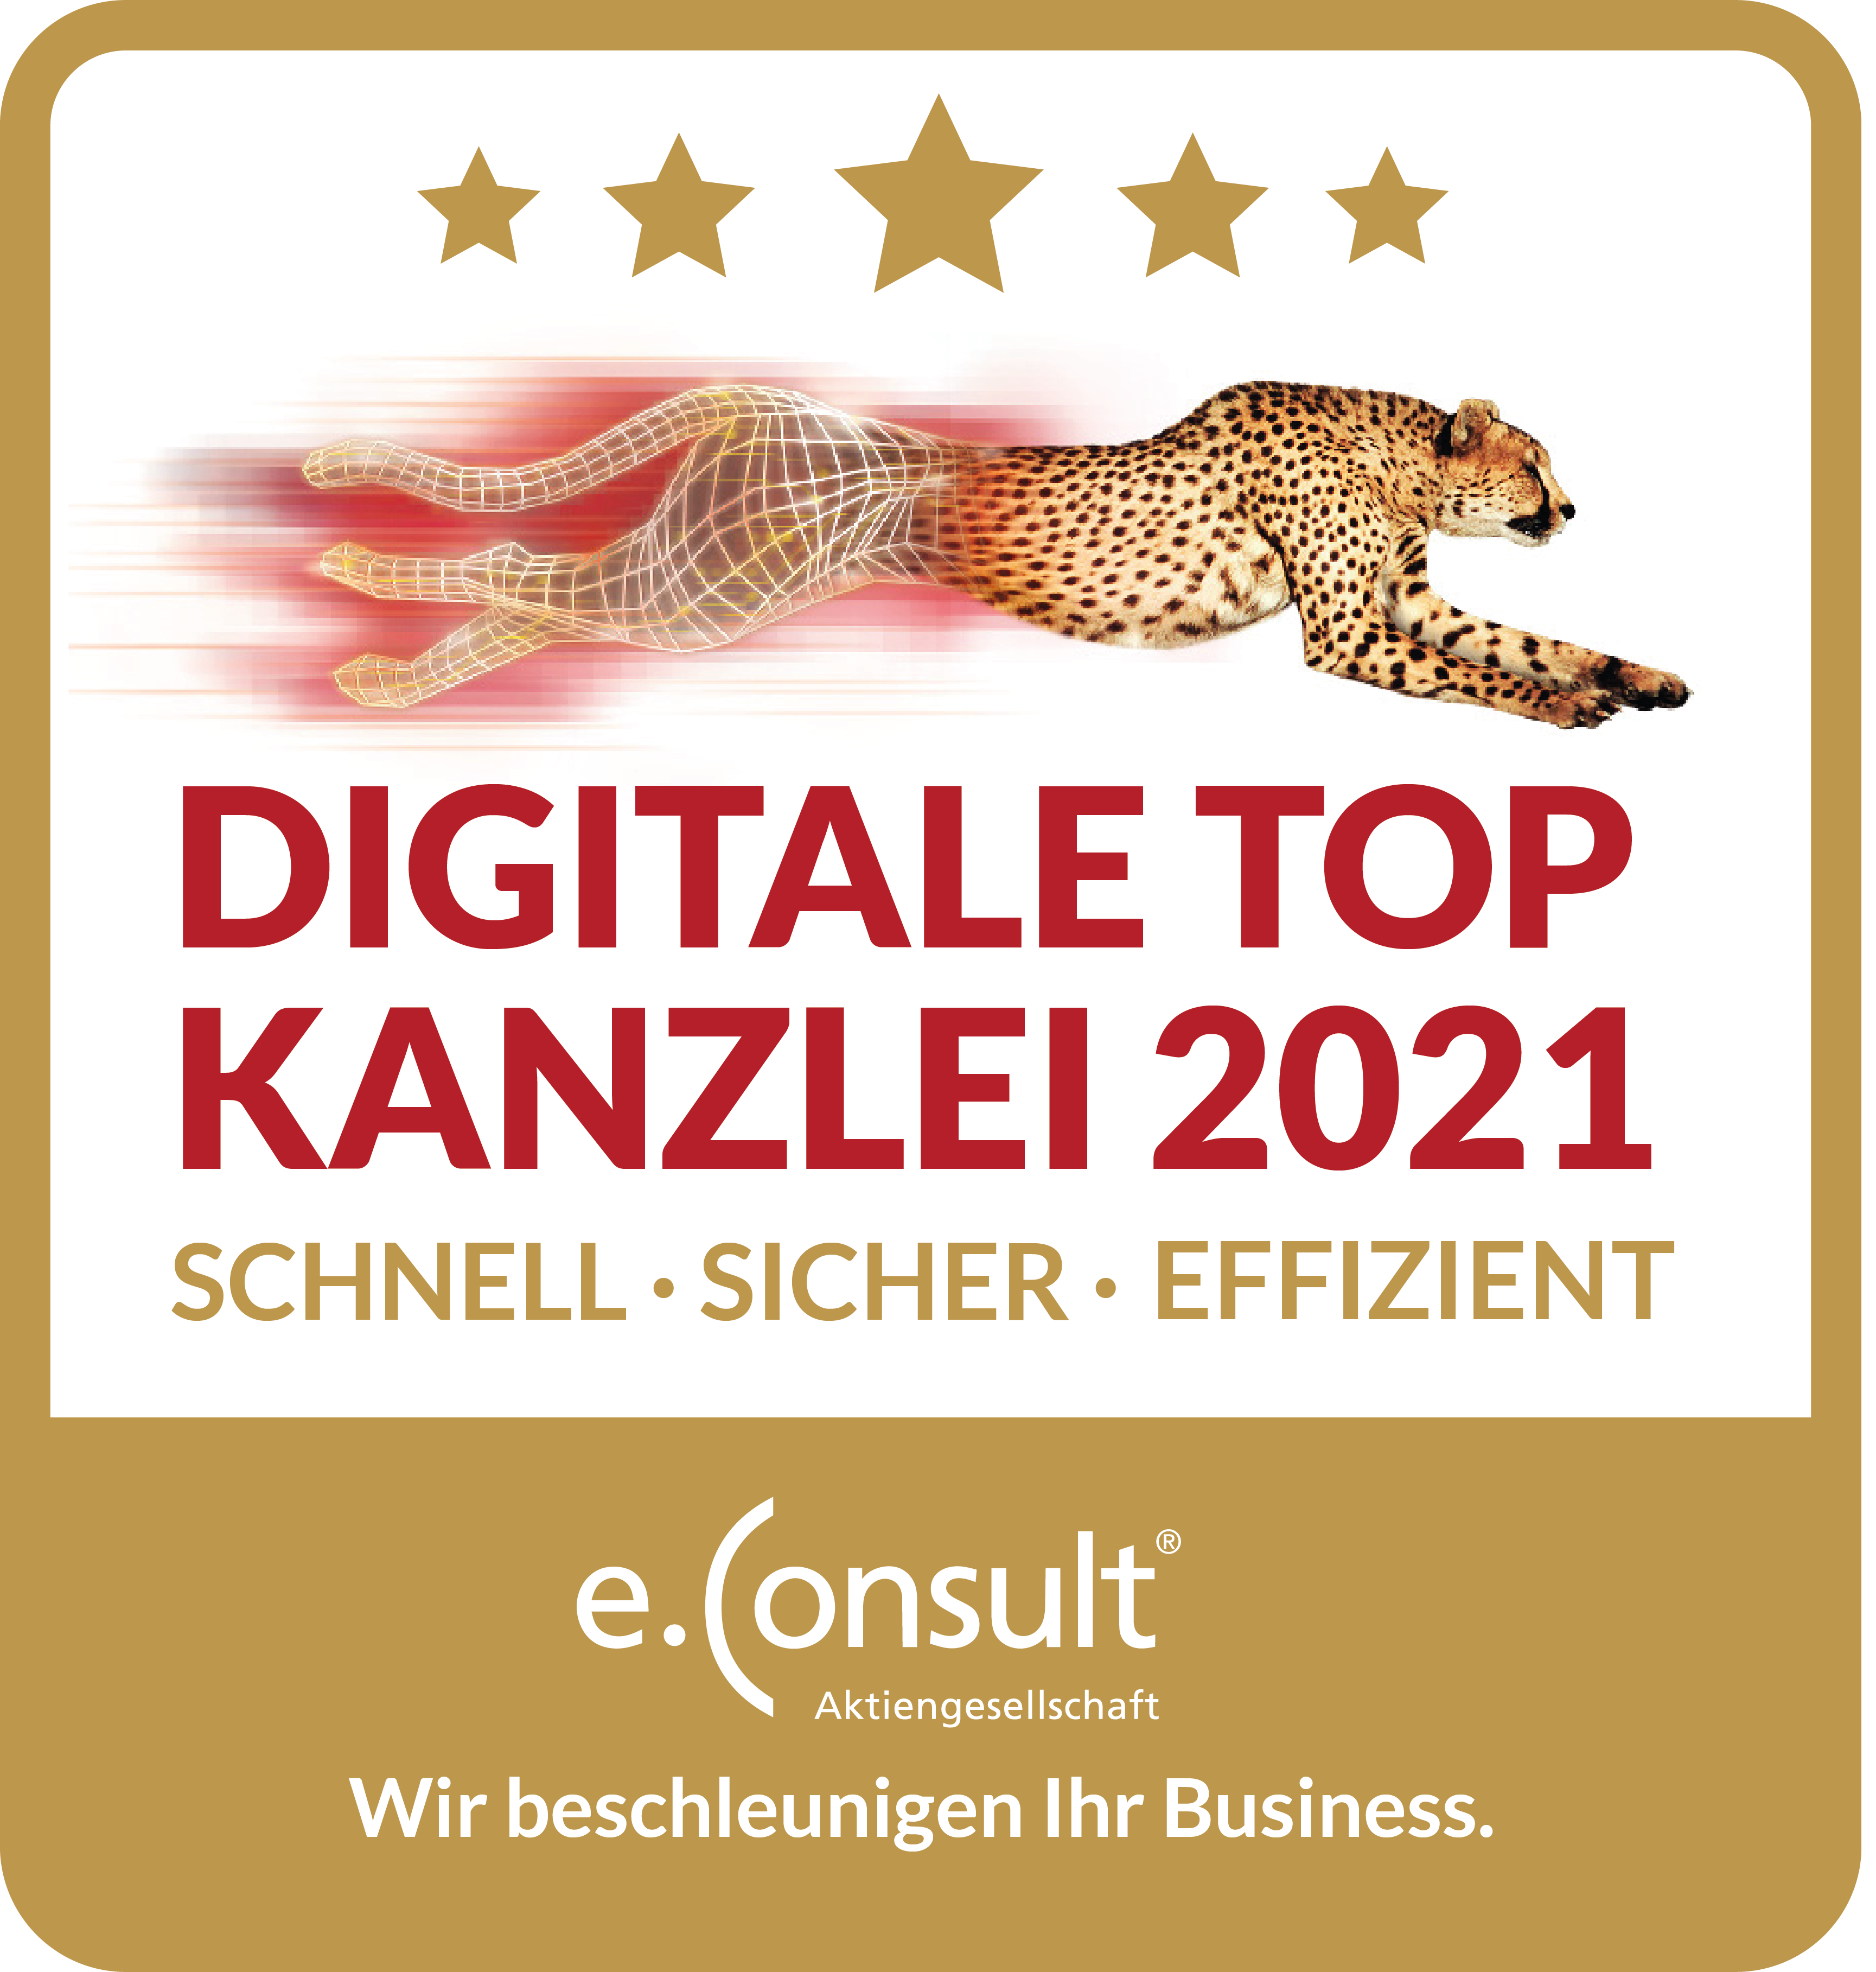 Digitale Top Kanzlei 2021